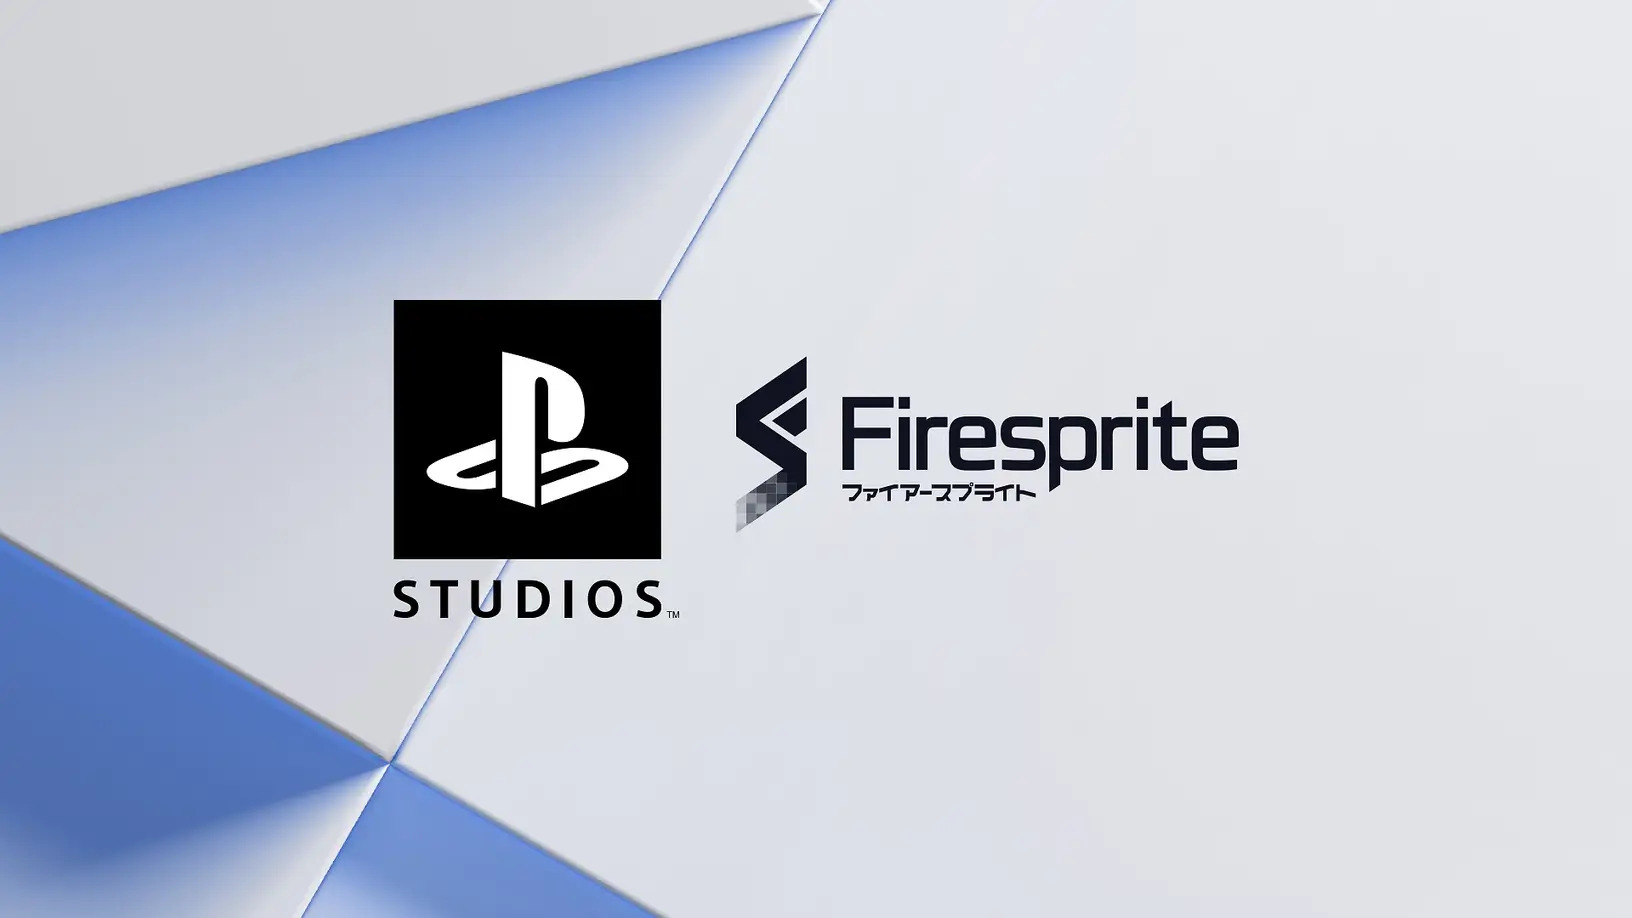 استقبال از استودیو Firesprite به عنوان عضو جدید استودیوهای PlayStation